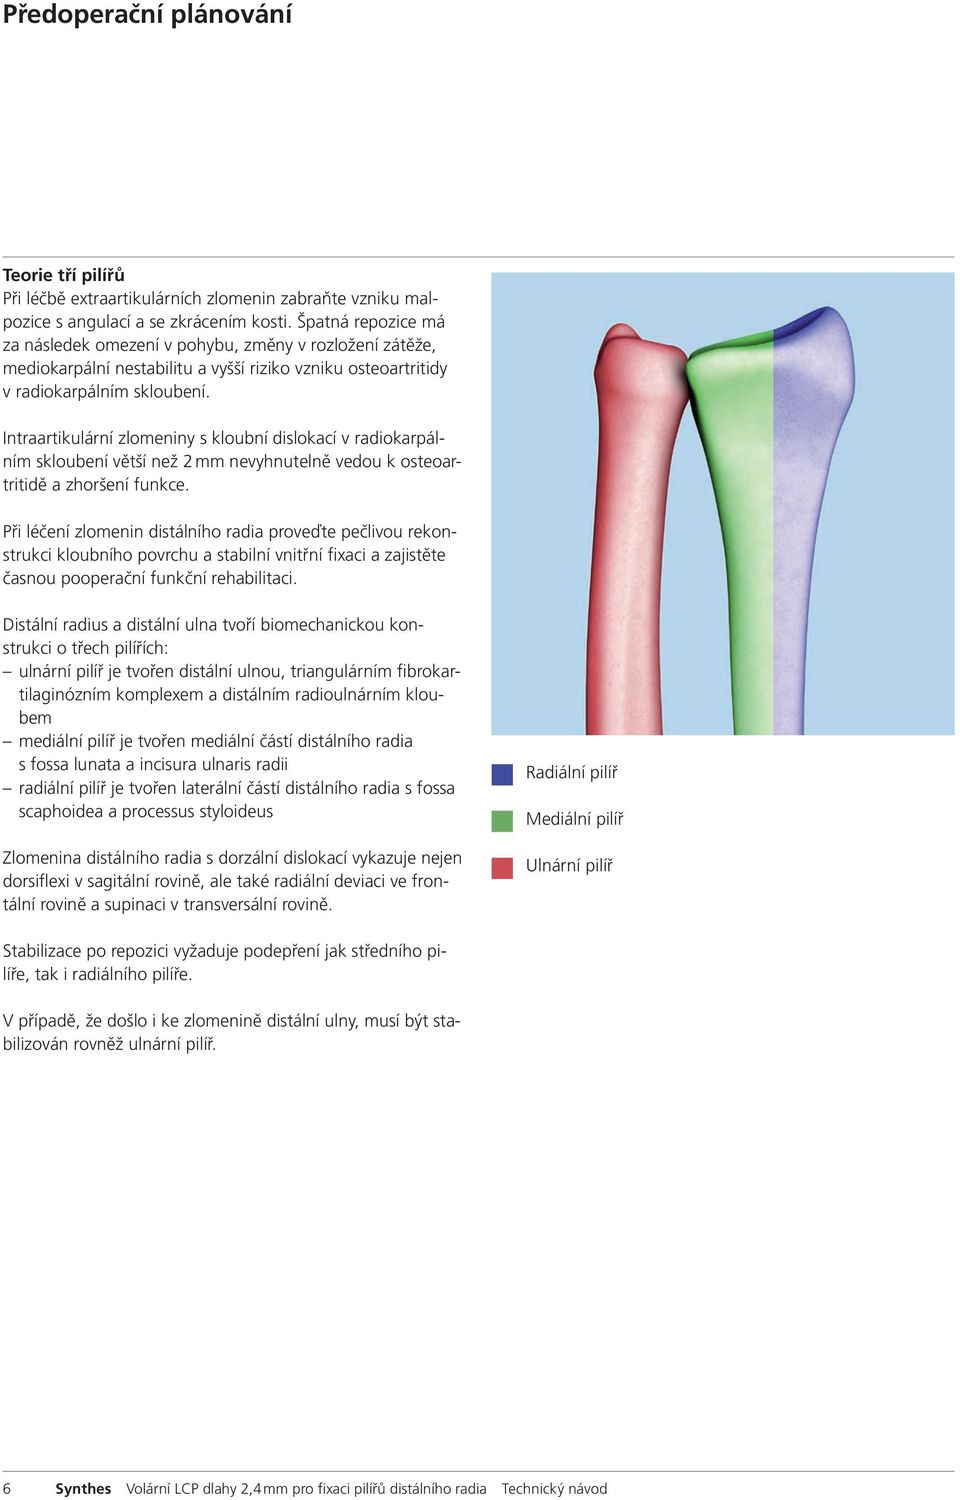 Intraartikulární zlomeniny s kloubní dislokací v radiokarpálním skloubení větší než 2 mm nevyhnutelně vedou k osteoartritidě a zhoršení funkce.